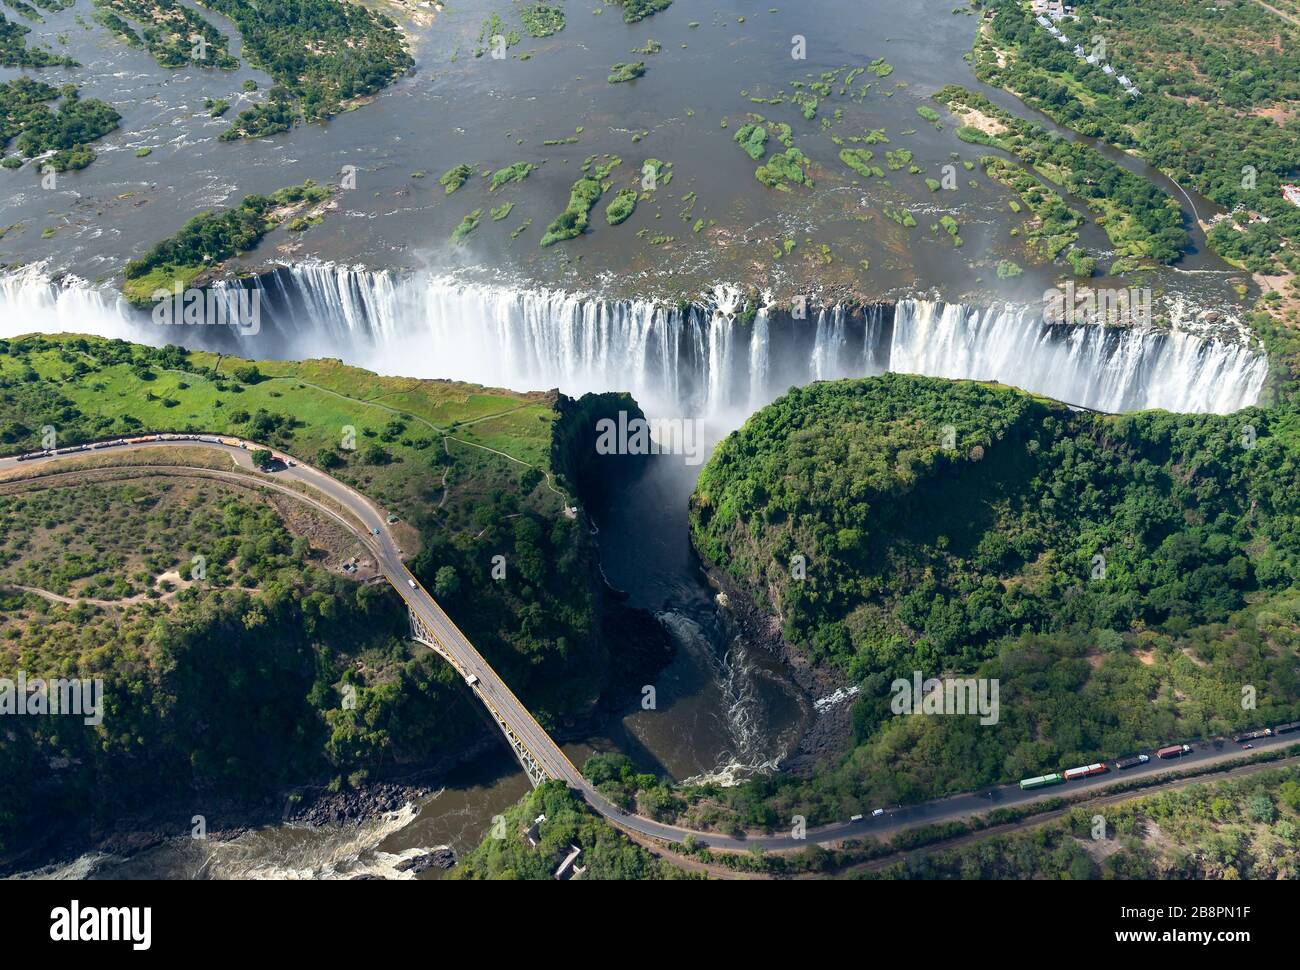 Vista aérea de las Cataratas Victoria situadas entre Zimbabwe y Zambia en África. Siete Maravillas Naturales del Mundo. Río Zambezi y puente fronterizo. Foto de stock